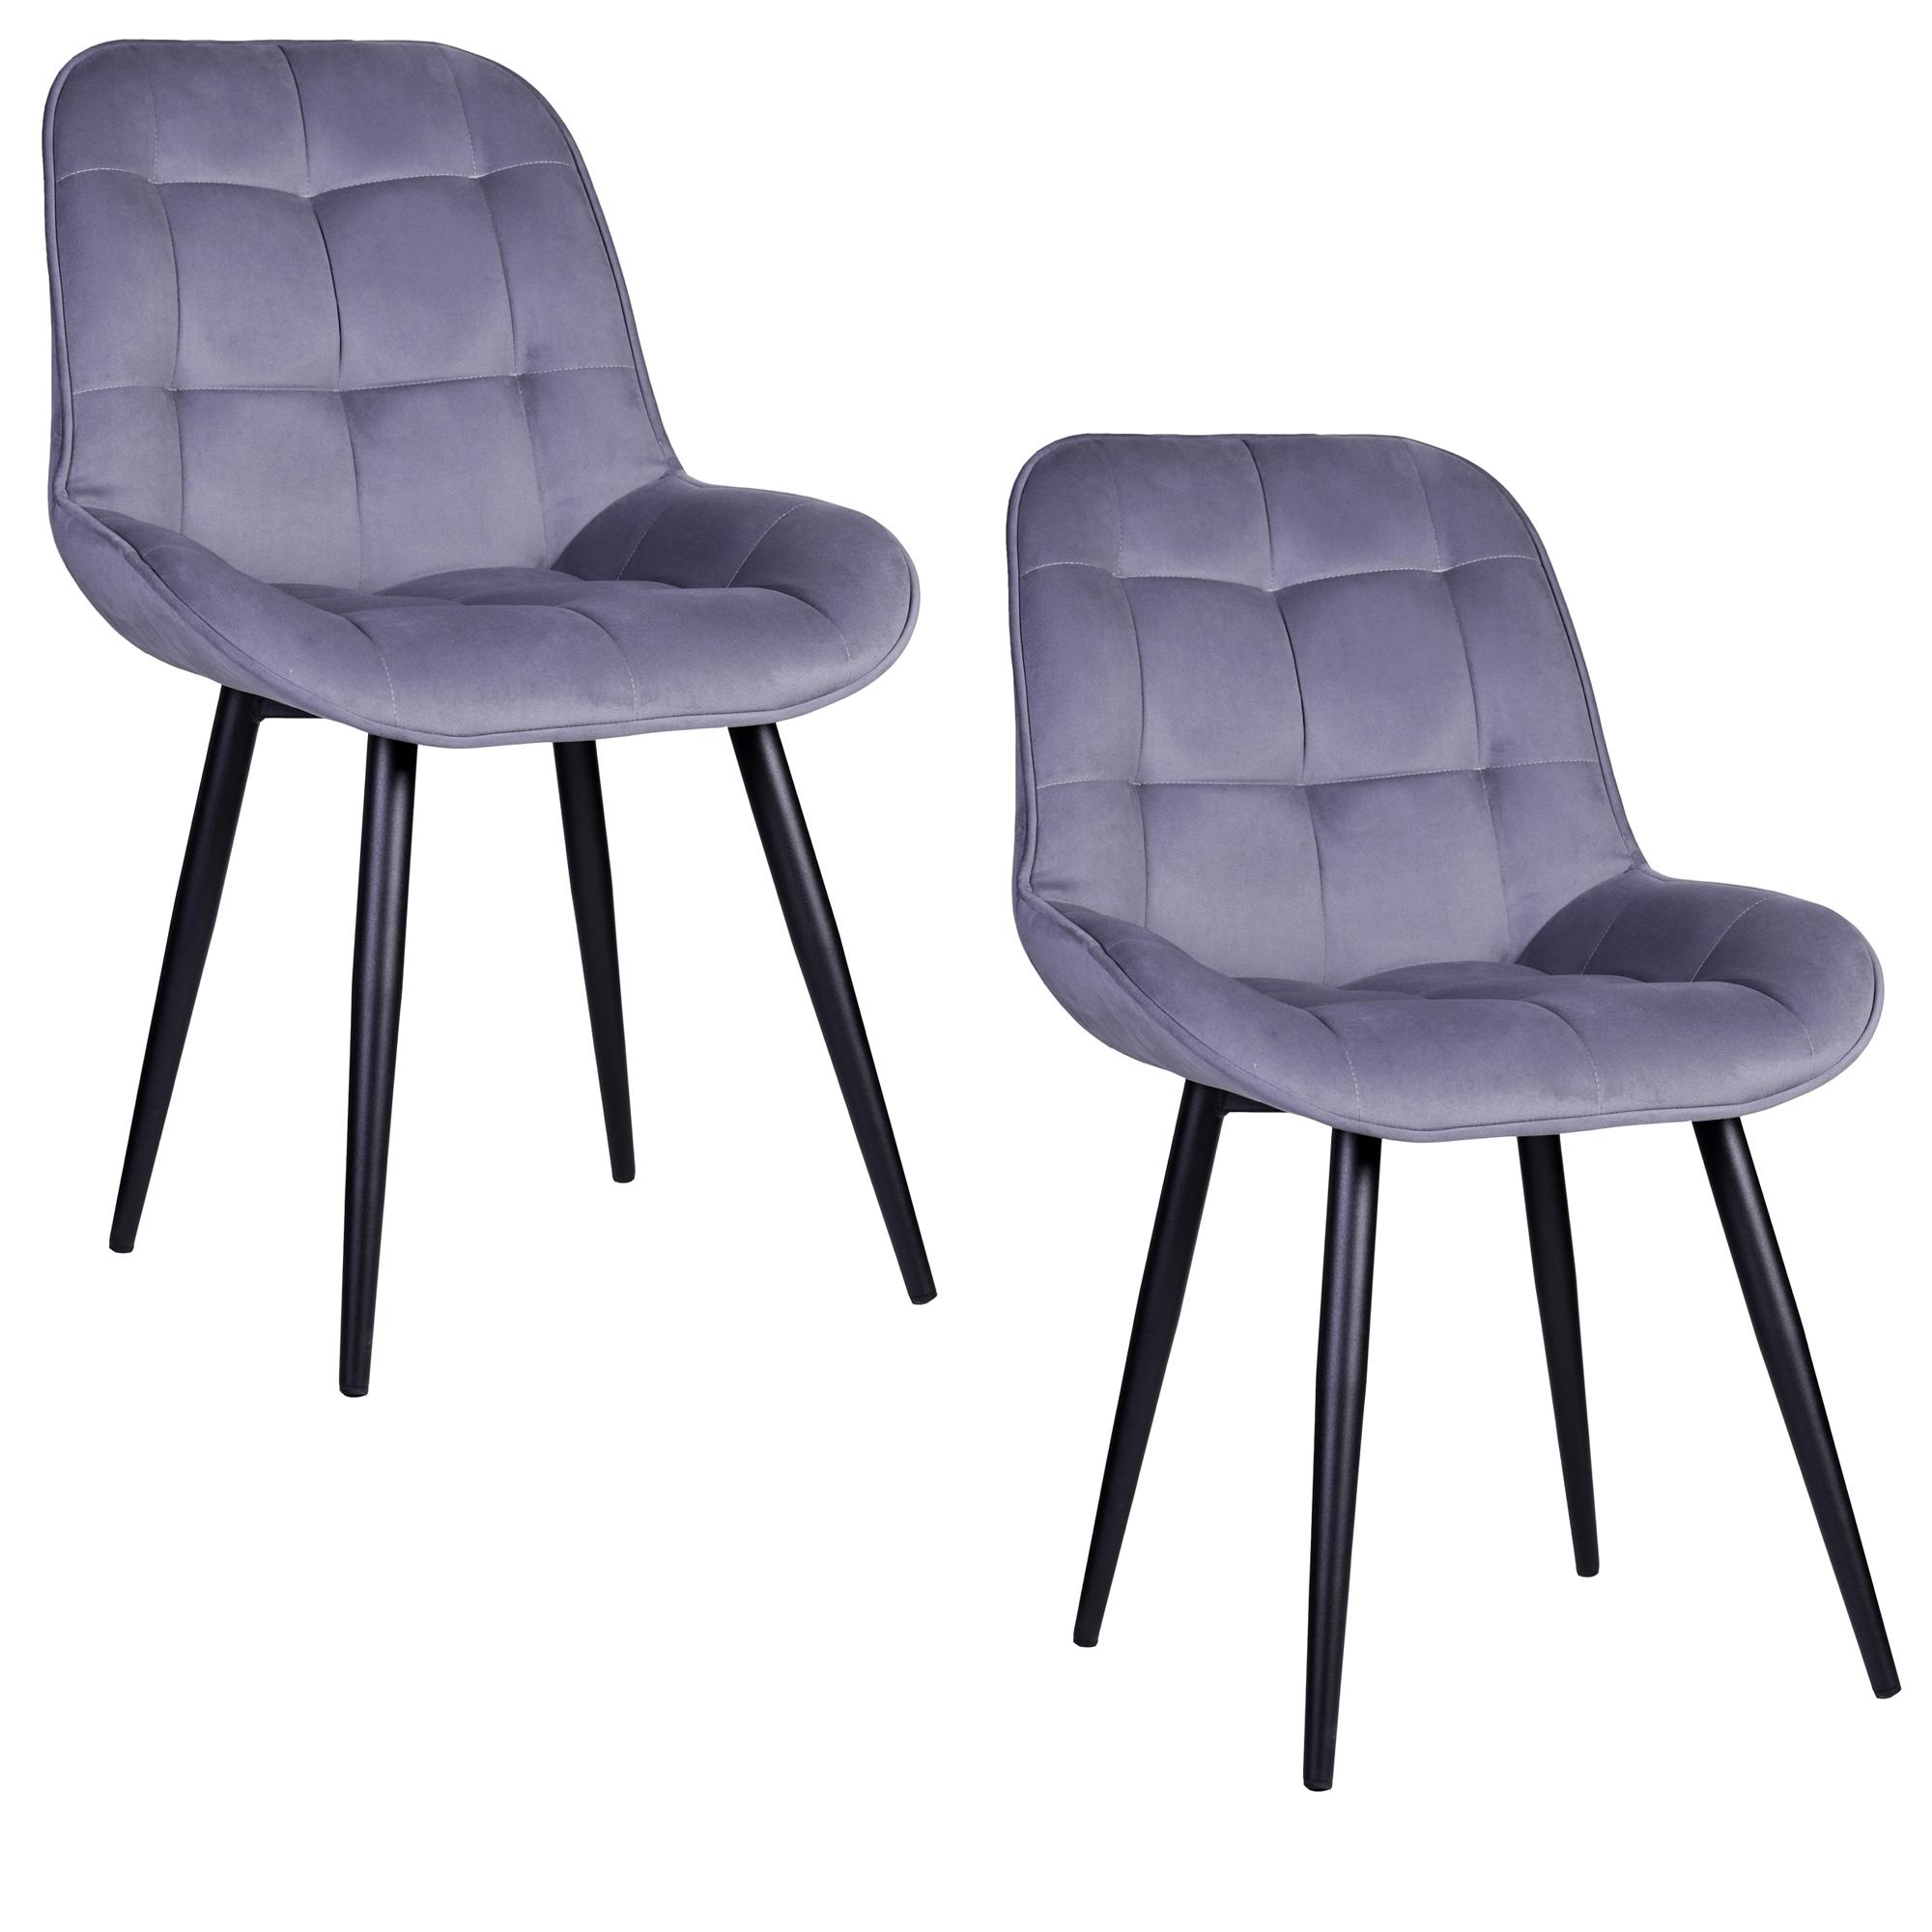 М1 Комплект стульев для кухни Фокси с поддерживающей спинкой, велюр, темно серый, 2 шт.